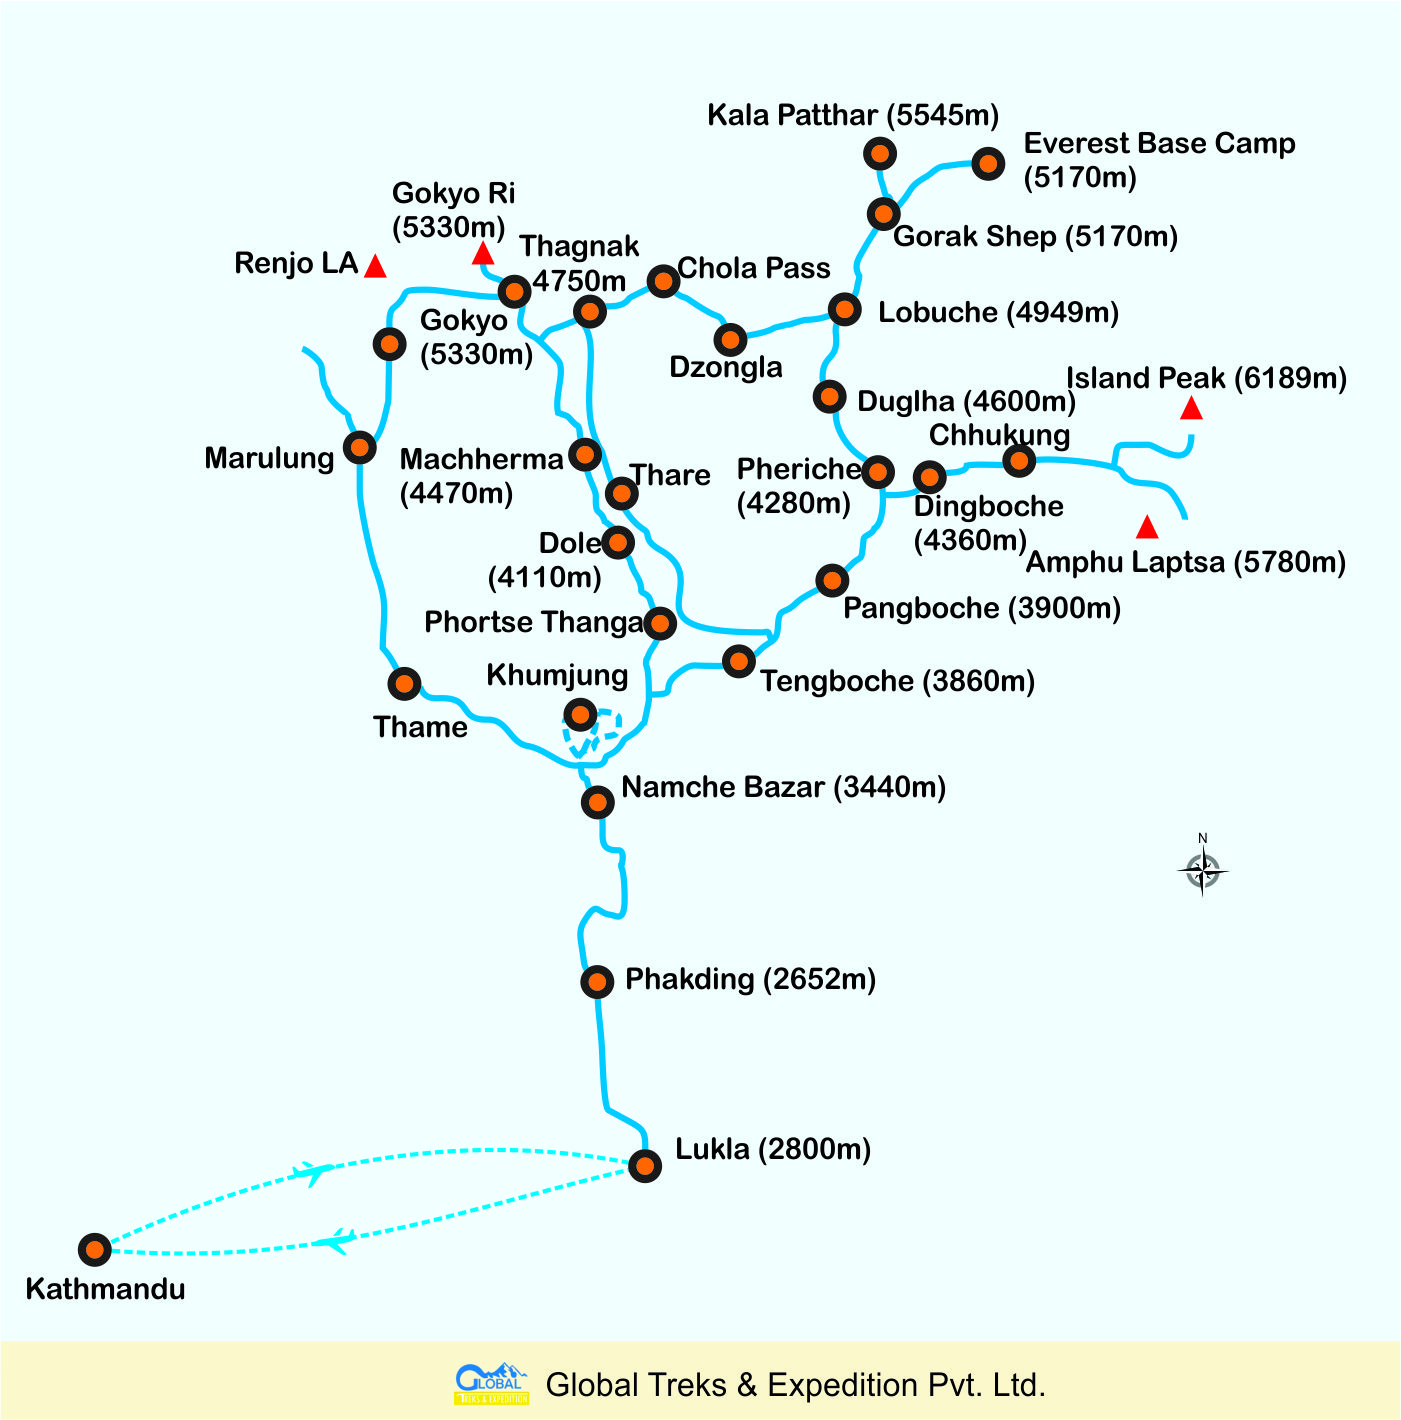 Map of Everest Gokyo & Gokyo RiTrek